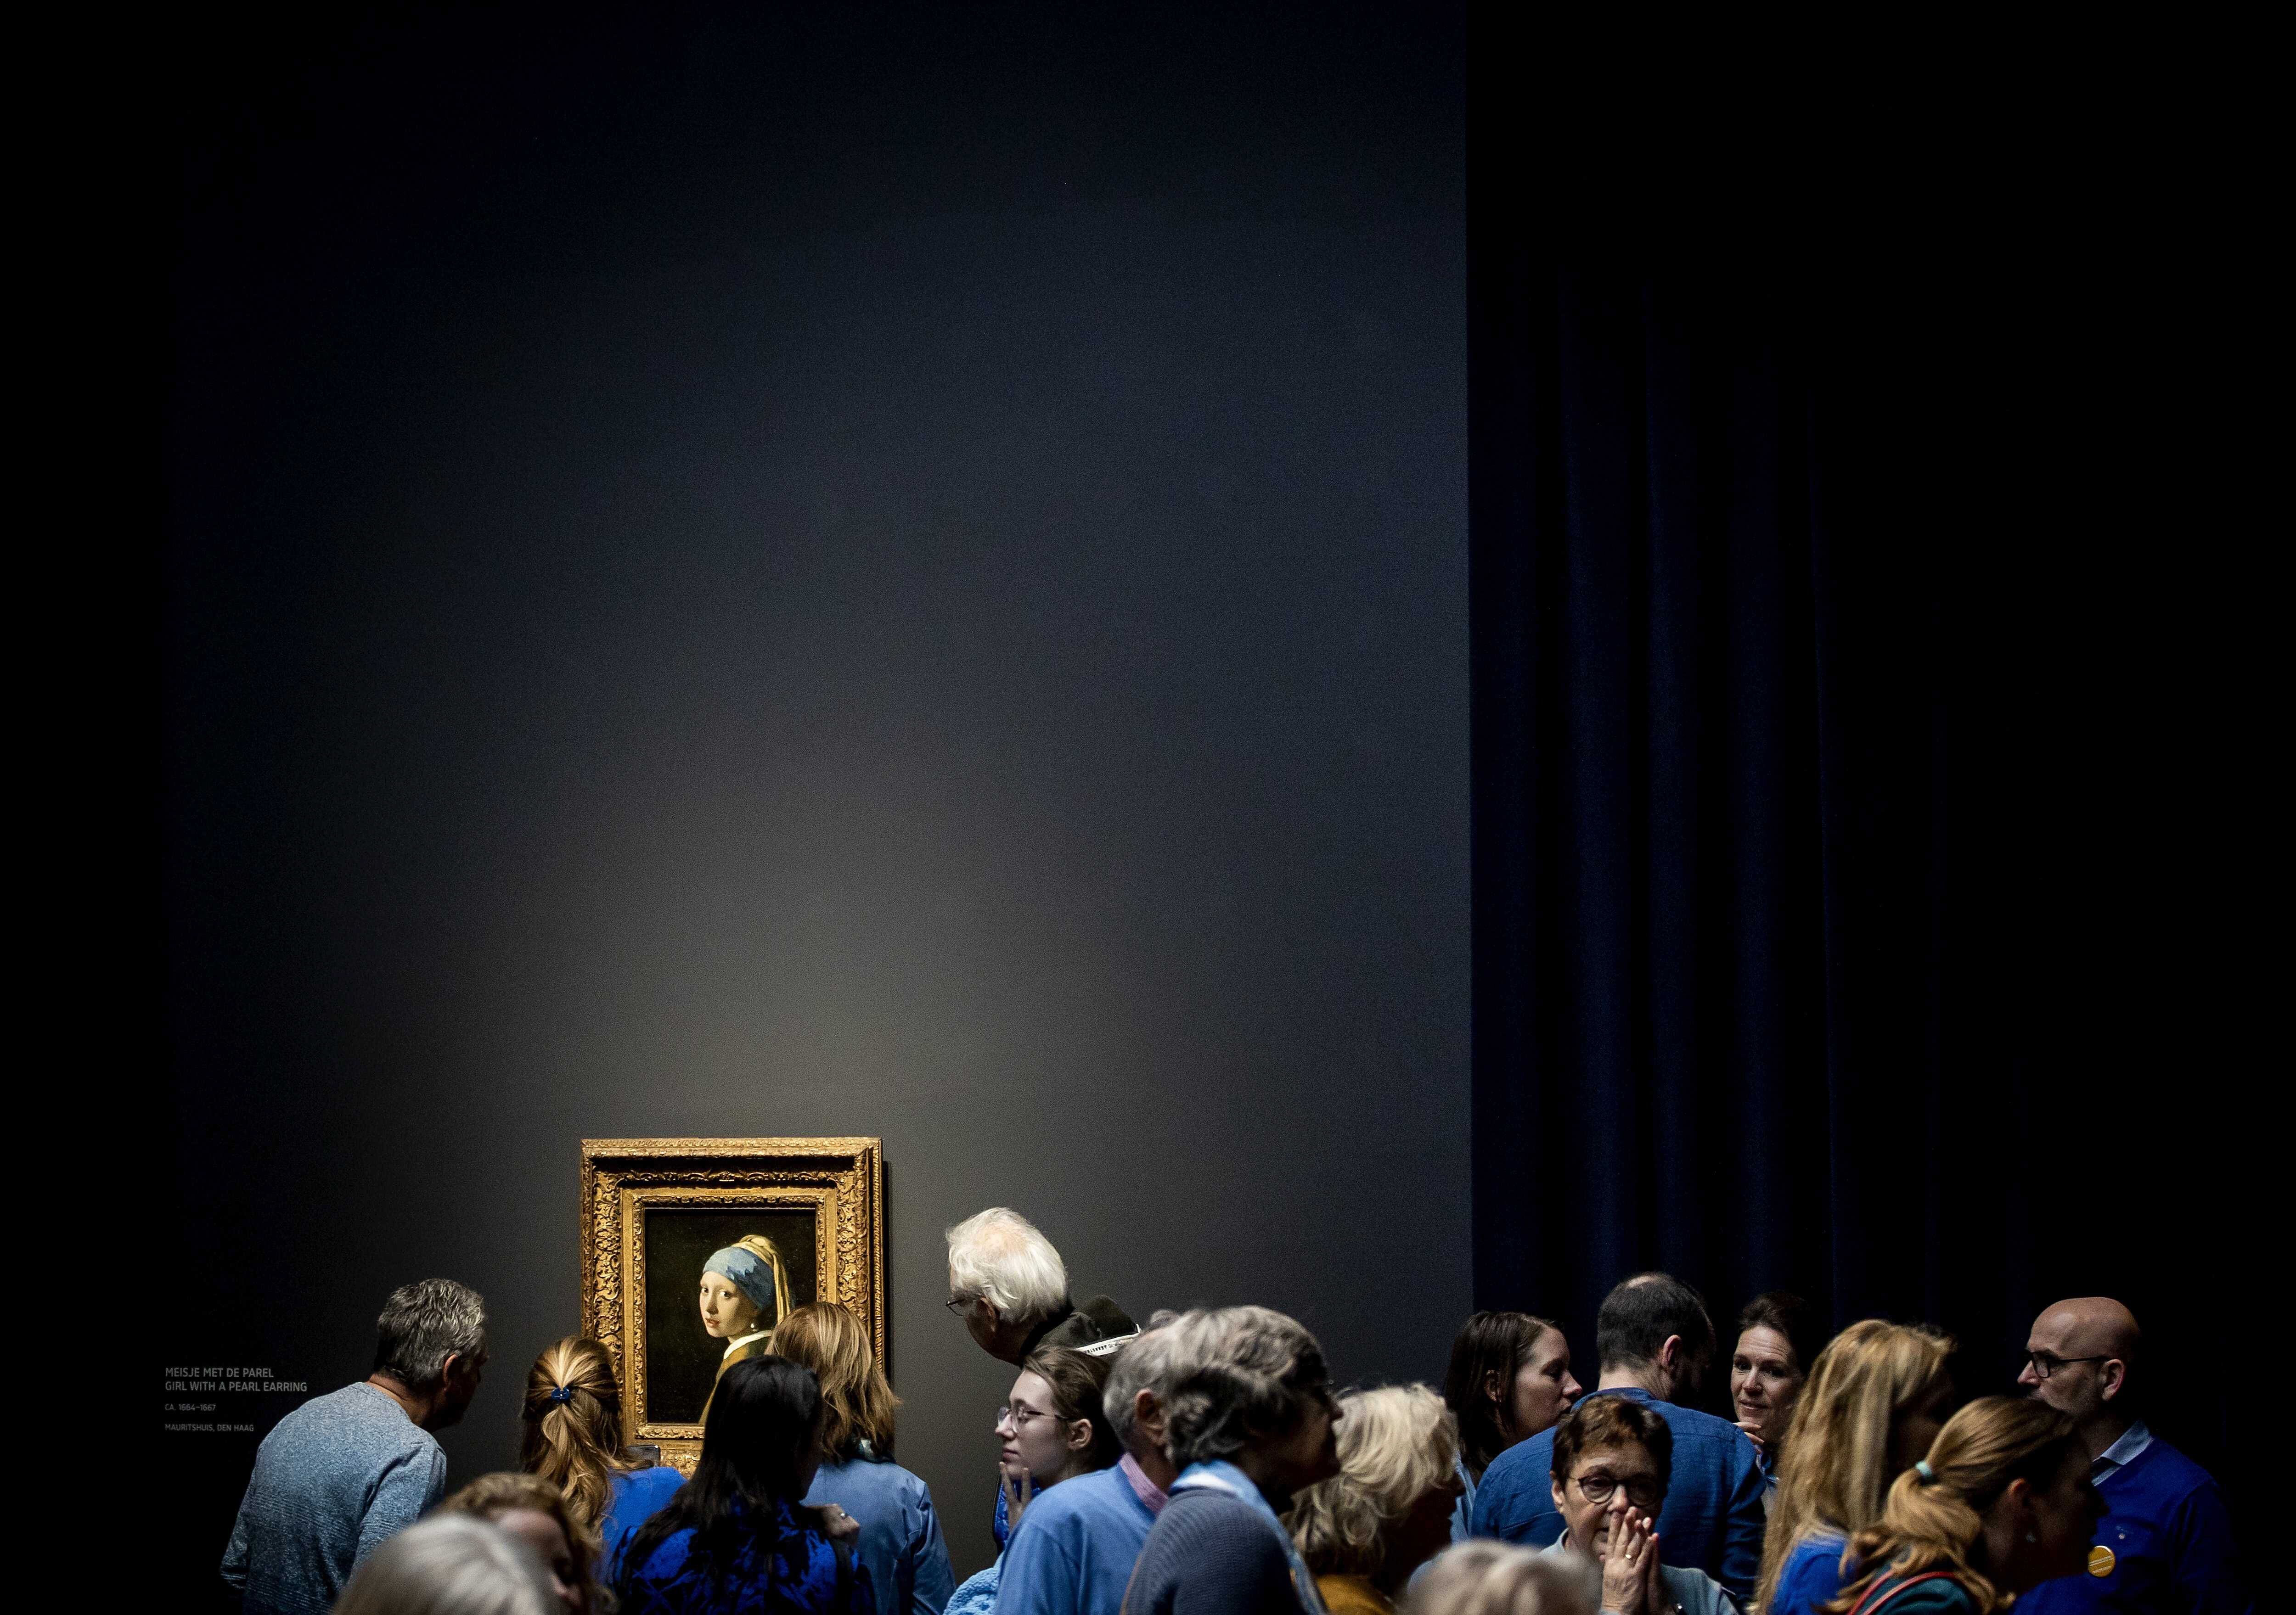 'La joven de la perla', de Vermeer, rodeada de visitantes en la exposición del Rijksmuseum dedicada al pintor.